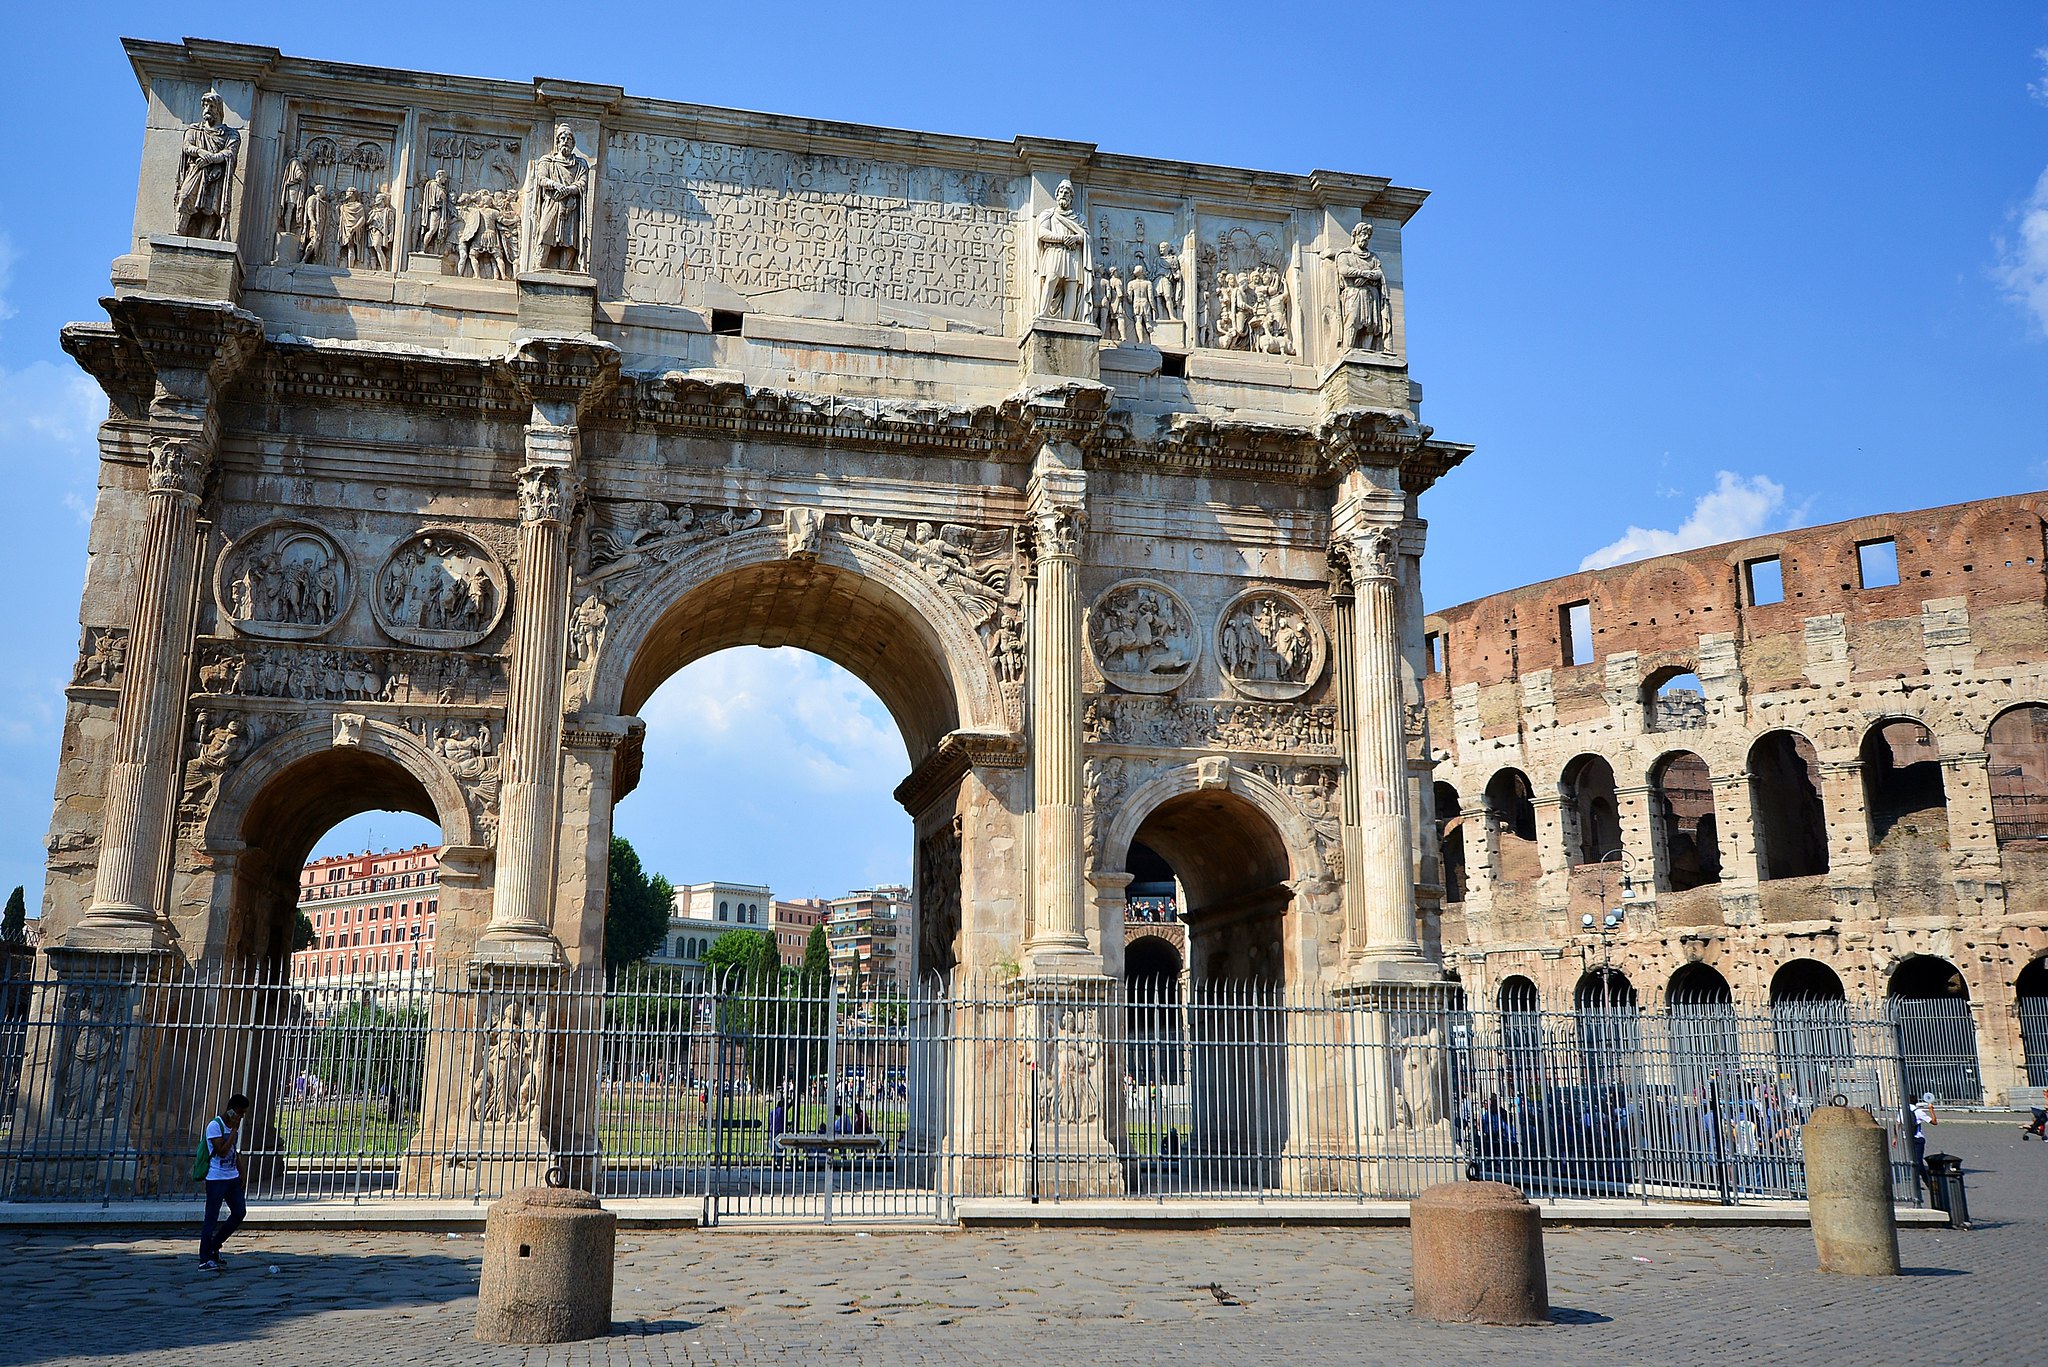 O Arco de Constantino, por exemplo, foi levantado com o objetivo de comemorar a vitória do imperador e suas tropas na Batalha da Ponte Mílvia, em 312. O legado arquitetônico prevalece como marca do êxito do combate, ao lado do Coliseu (Foto: Photo B.Cool)